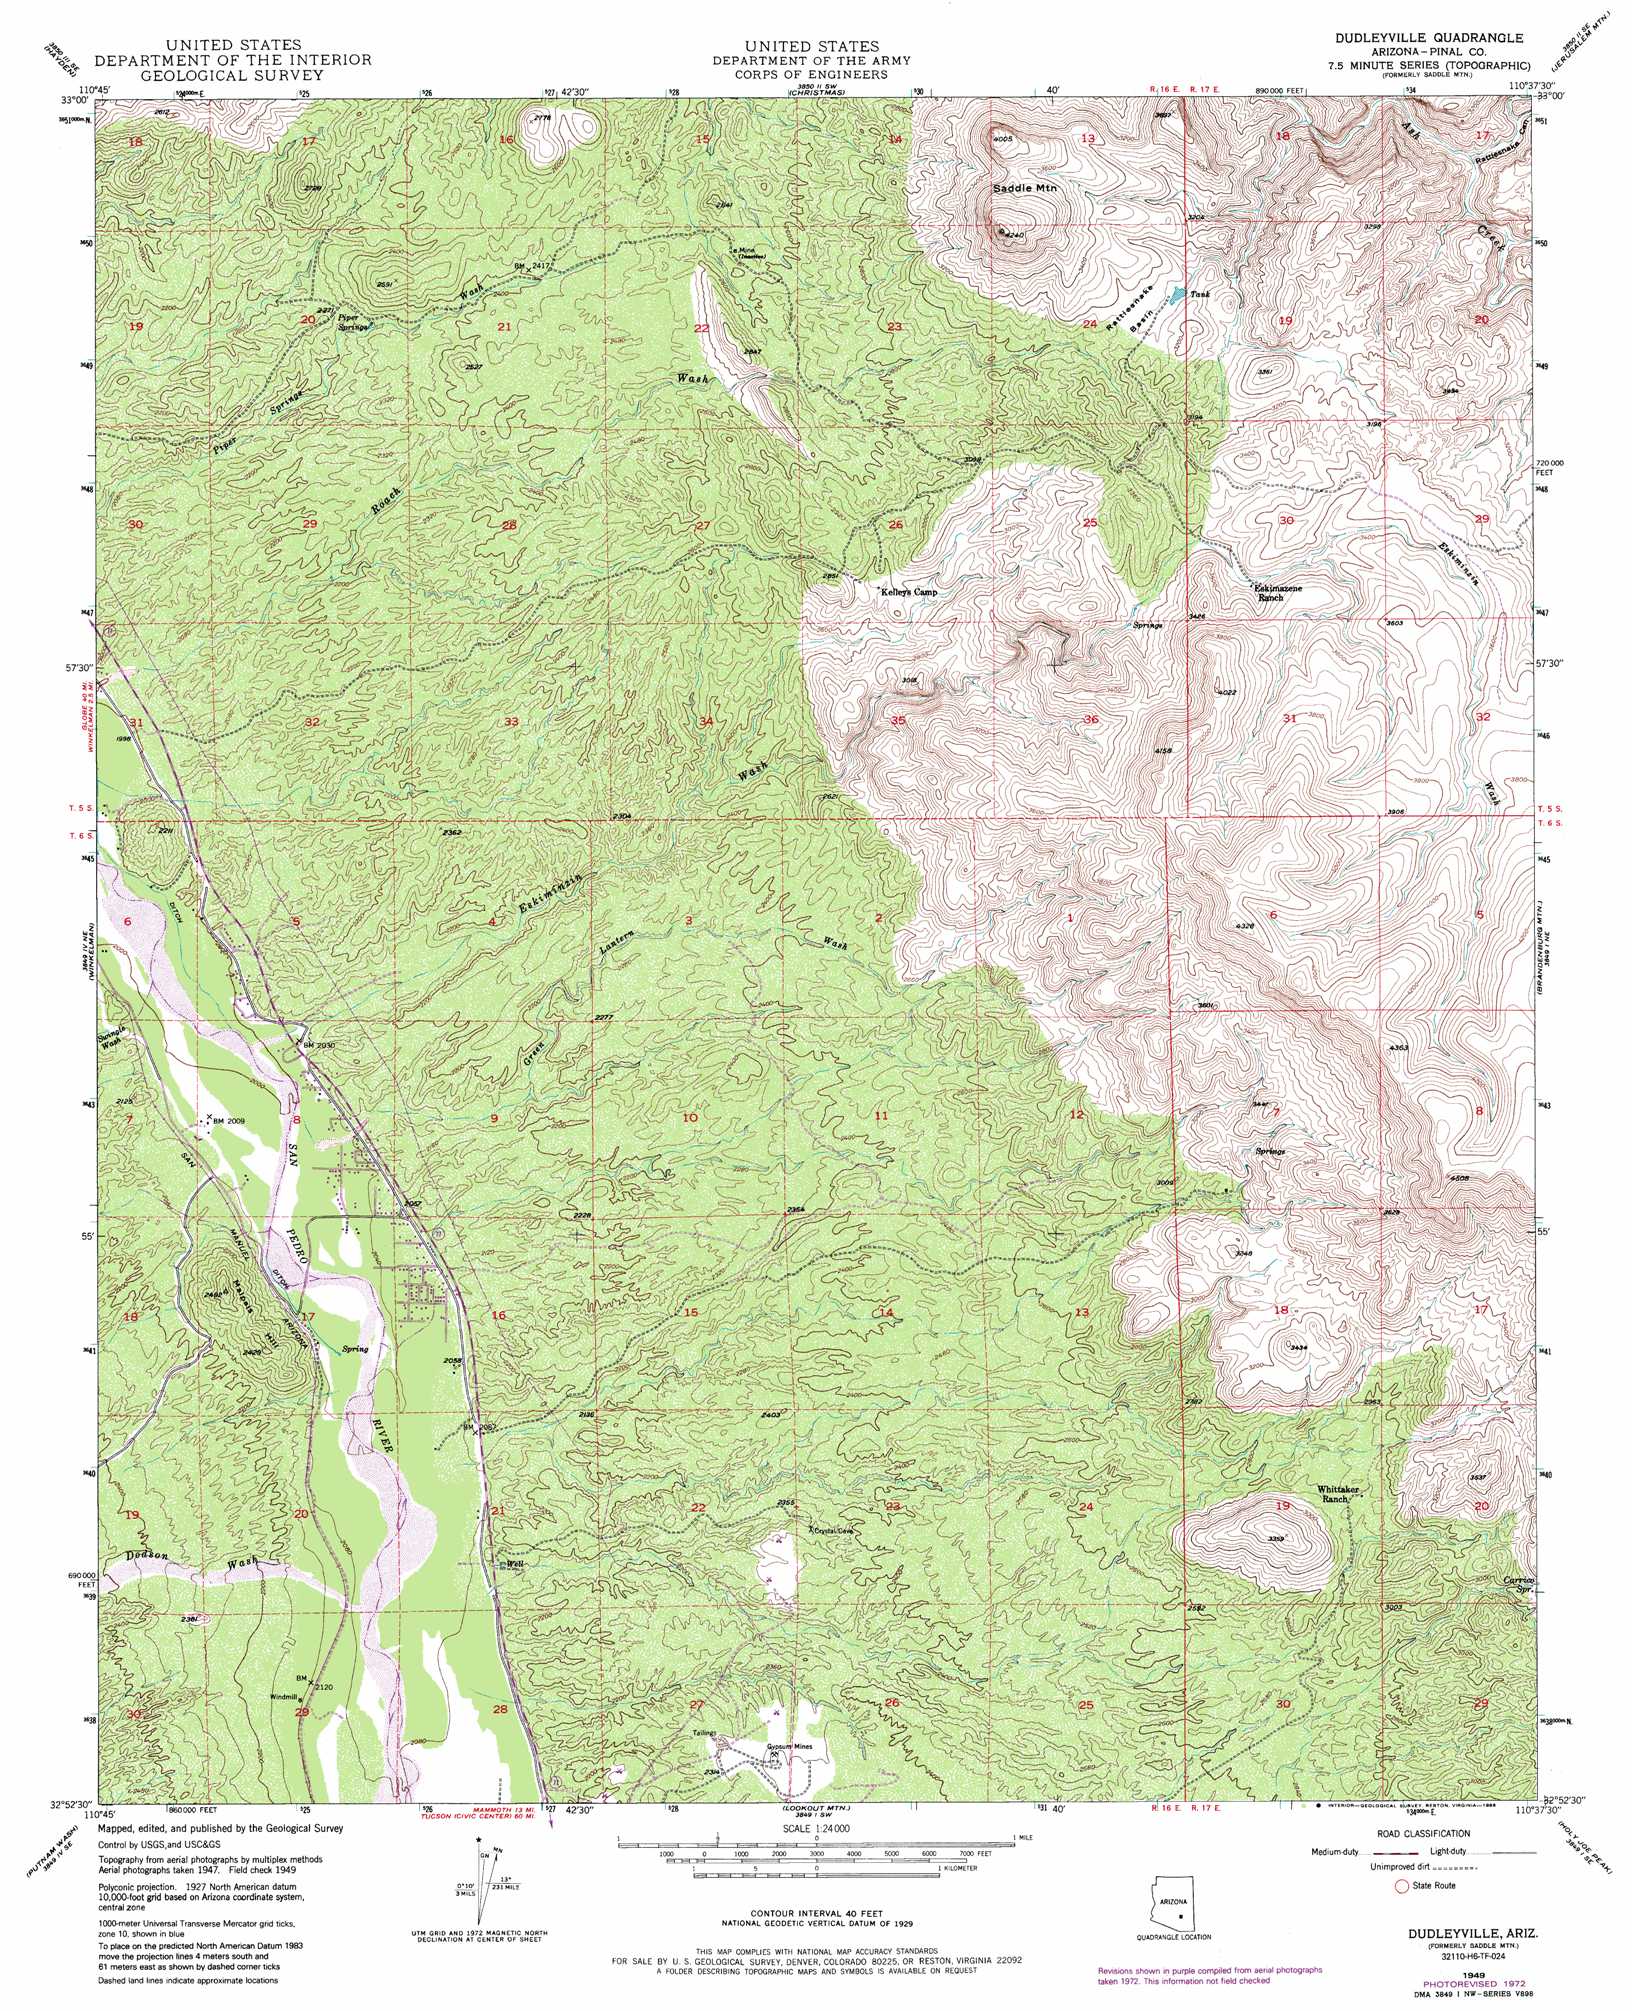 Dudleyville topographic map, AZ - USGS Topo Quad 32110h6